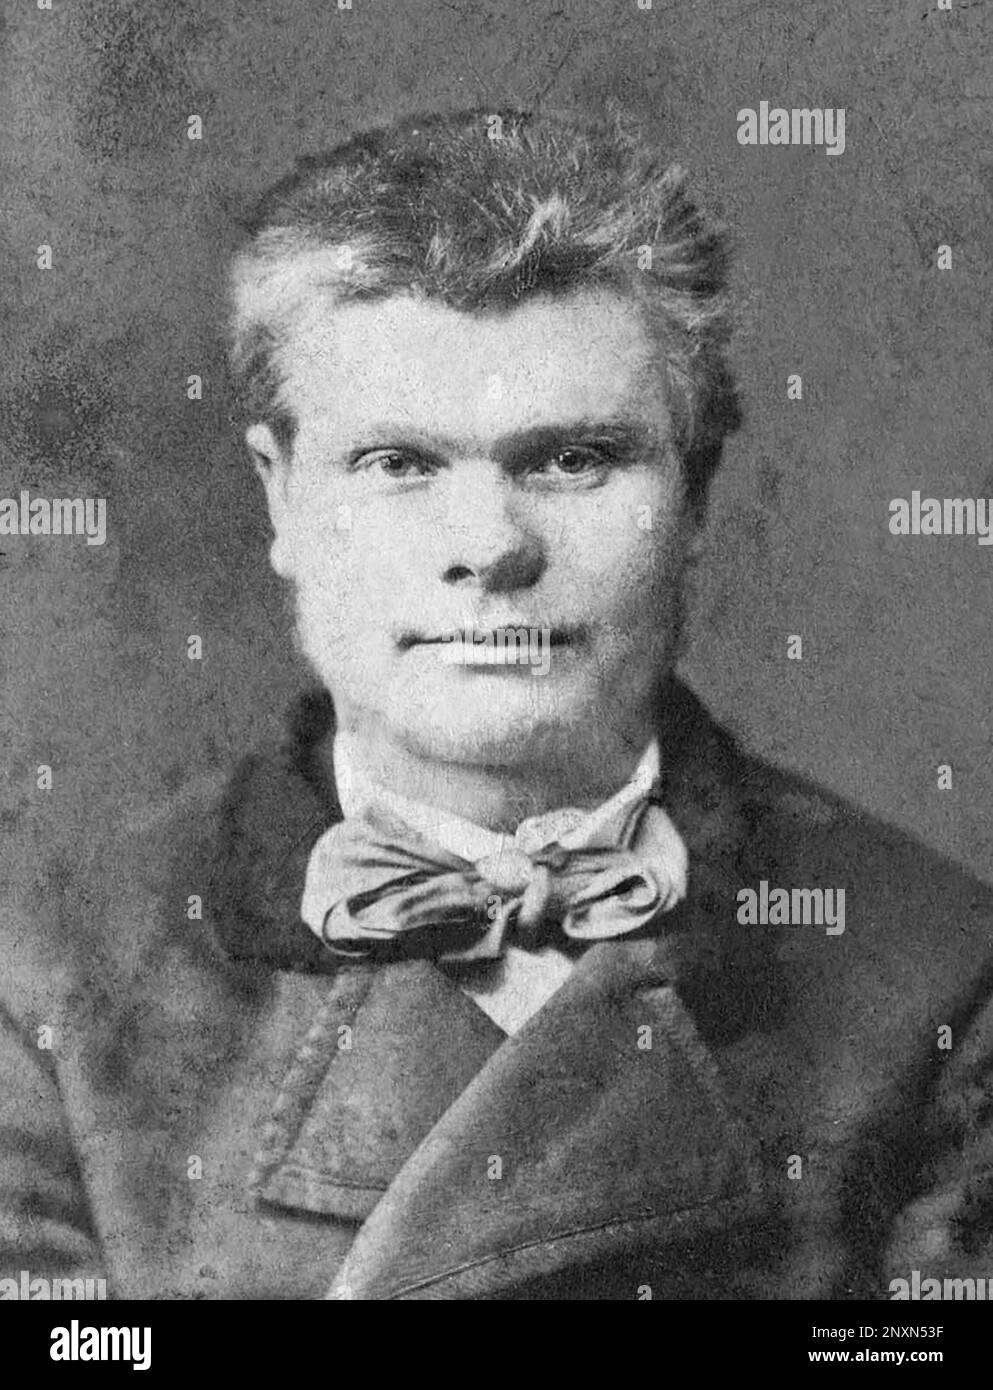 Der 1856 geborene Rummu Jeori war ein estnischer Gesetzloser und Volksheld, der die Reichen bestahl, um sie den Armen zu geben. Foto von 1880. Stockfoto